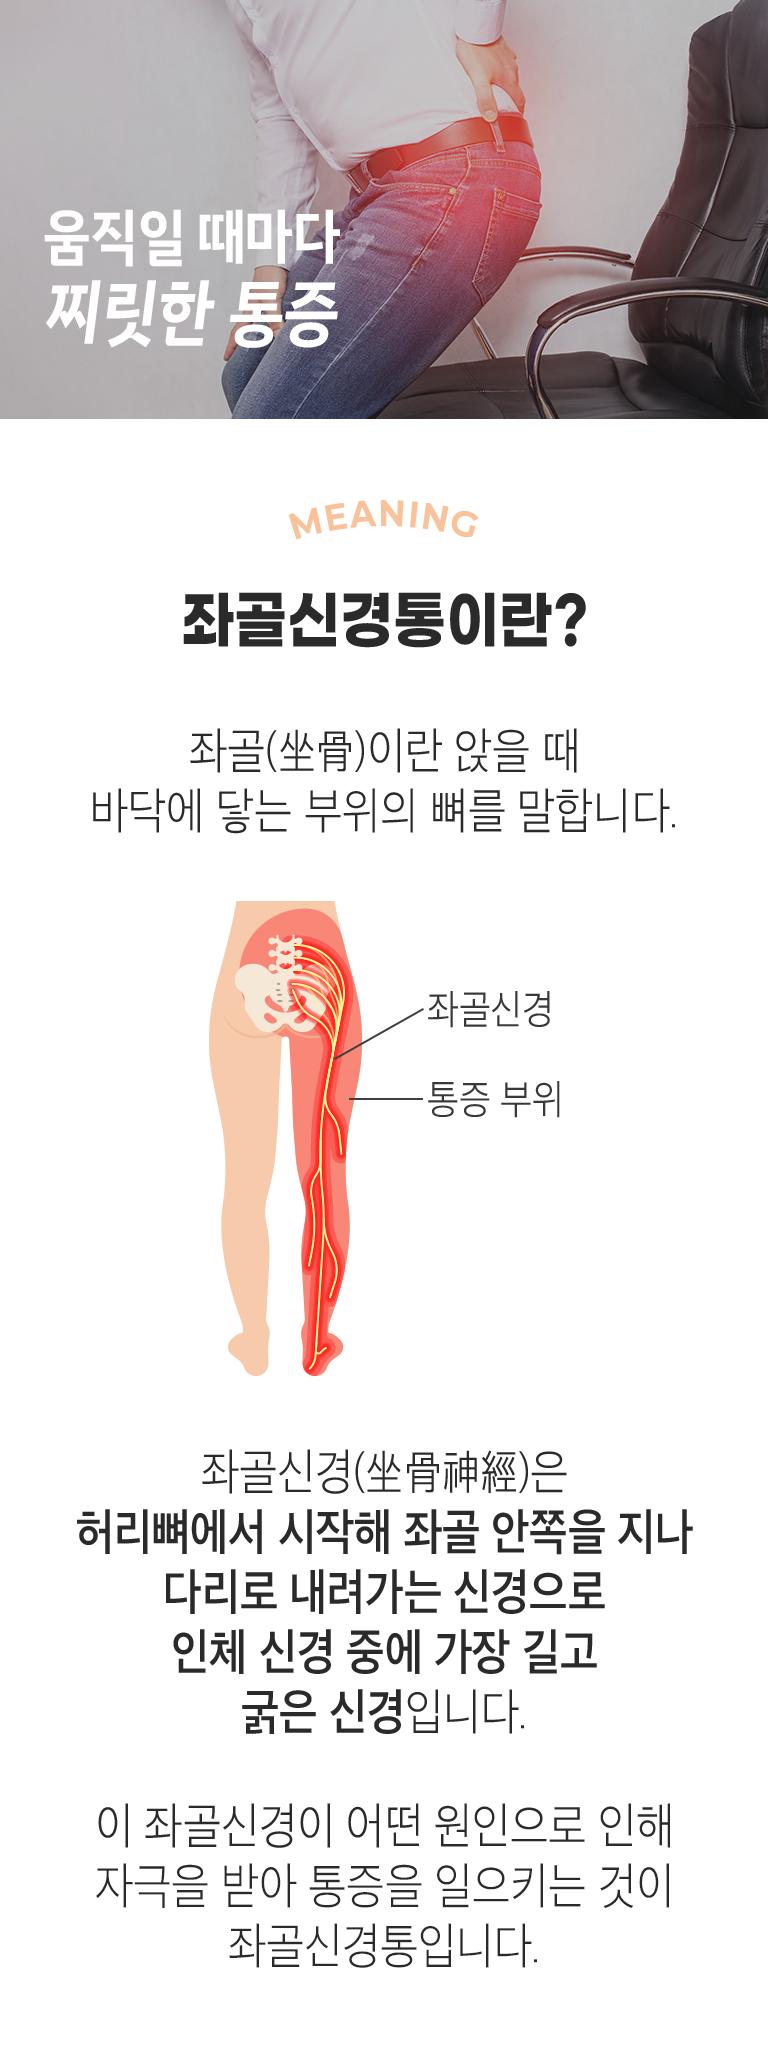 움직일 때마다 찌릿한 통증. MEANING 좌골신경통이란? ▷ 좌골(坐骨)이란 앉을 때 바닥에 닿는 부위의 뼈를 말합니다. 좌골신경(坐骨神經)은 허리뼈에서 시작해 좌골 안쪽을 지나 다리로 내려가는 신경으로 인체 신경 중에 가장 길고 굵은 신경입니다. 이 좌골신경이 어떤 원인으로 인해 자극을 받아 통증을 일으키는 것이 좌골신경통입니다.